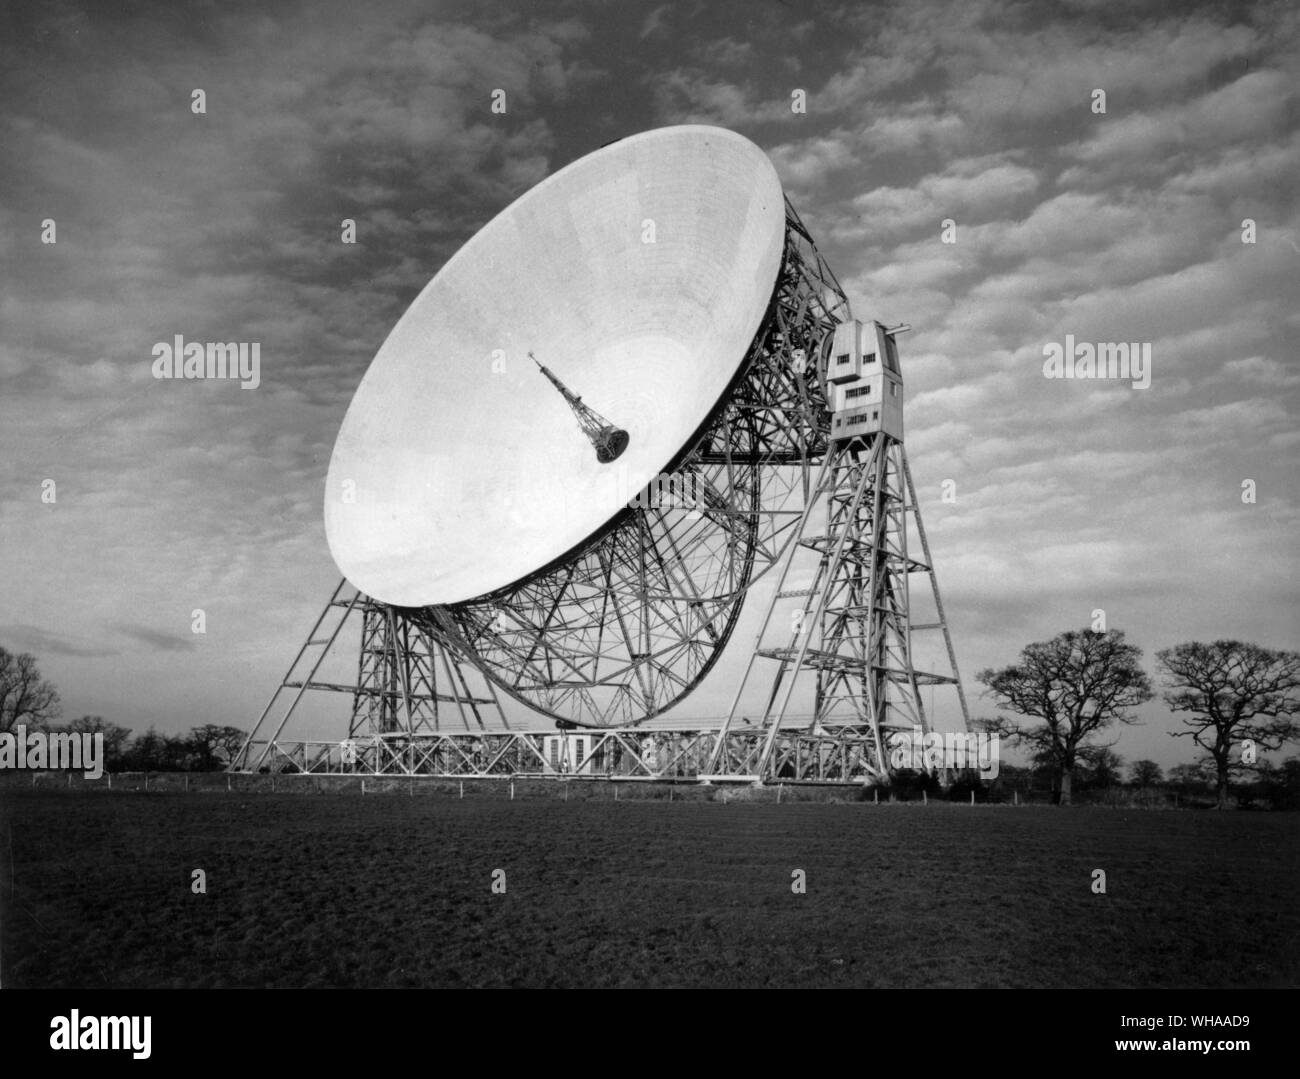 Après près de 10 ans de planification le radiotélescope de Jodrell Bank le plus grand radiotélescope orientable entièrement l'un dans le monde a été mis en place à temps pour prendre part à l'Année géophysique internationale de 1957-1958. Propulsé par des moteurs électriques il peut être conduit à lutter contre le mouvement de la terre afin de suivre automatiquement un météore ou étoile planète satellite artificiel. Il peut pénétrer plus profondément dans l'espace que n'importe quelle autre forme de télescope pour entendre ' ' des signaux radio émis il y a des millions d'années-lumière. Le bol qui peut être tourné ou inclinée dans n'importe quelle direction recueille et concentre les ondes radio en option Banque D'Images